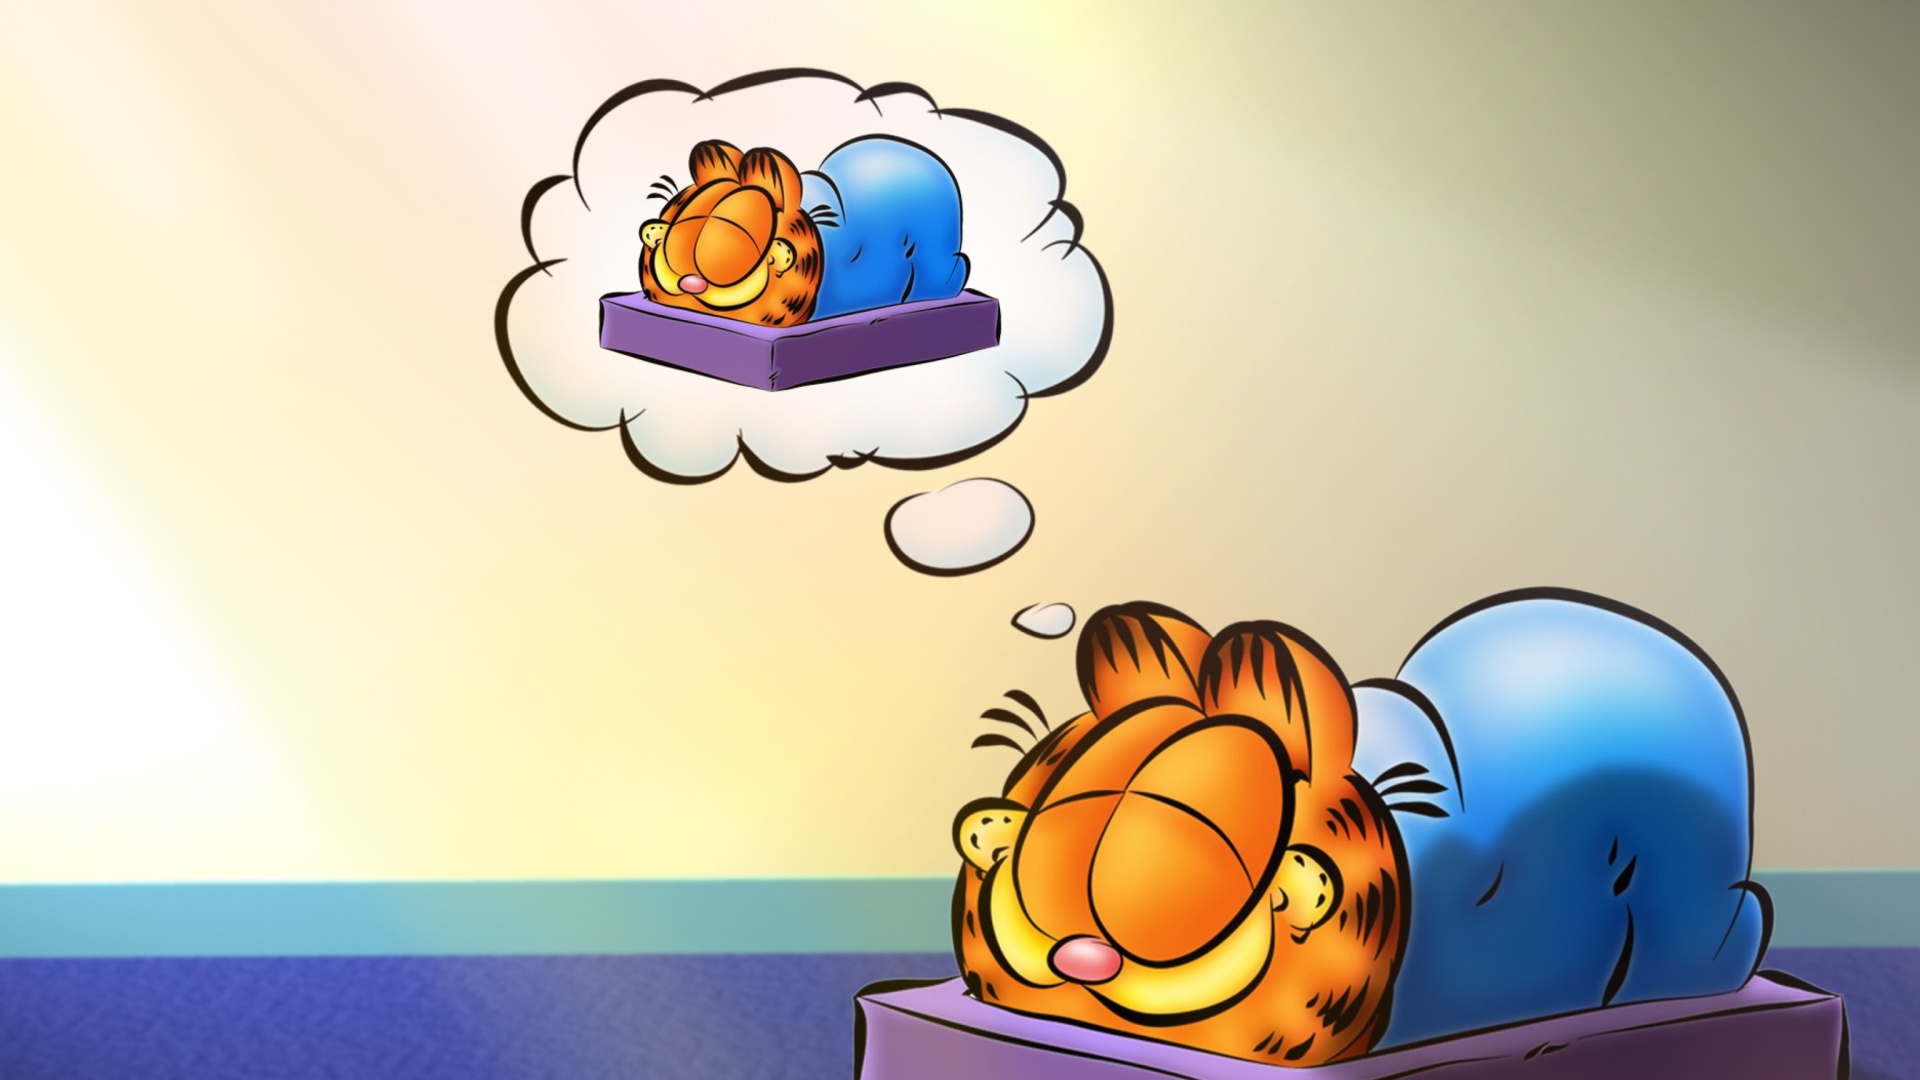 Garfield Sleep Wallpaper1920x1080 Wallpaper Screensaver